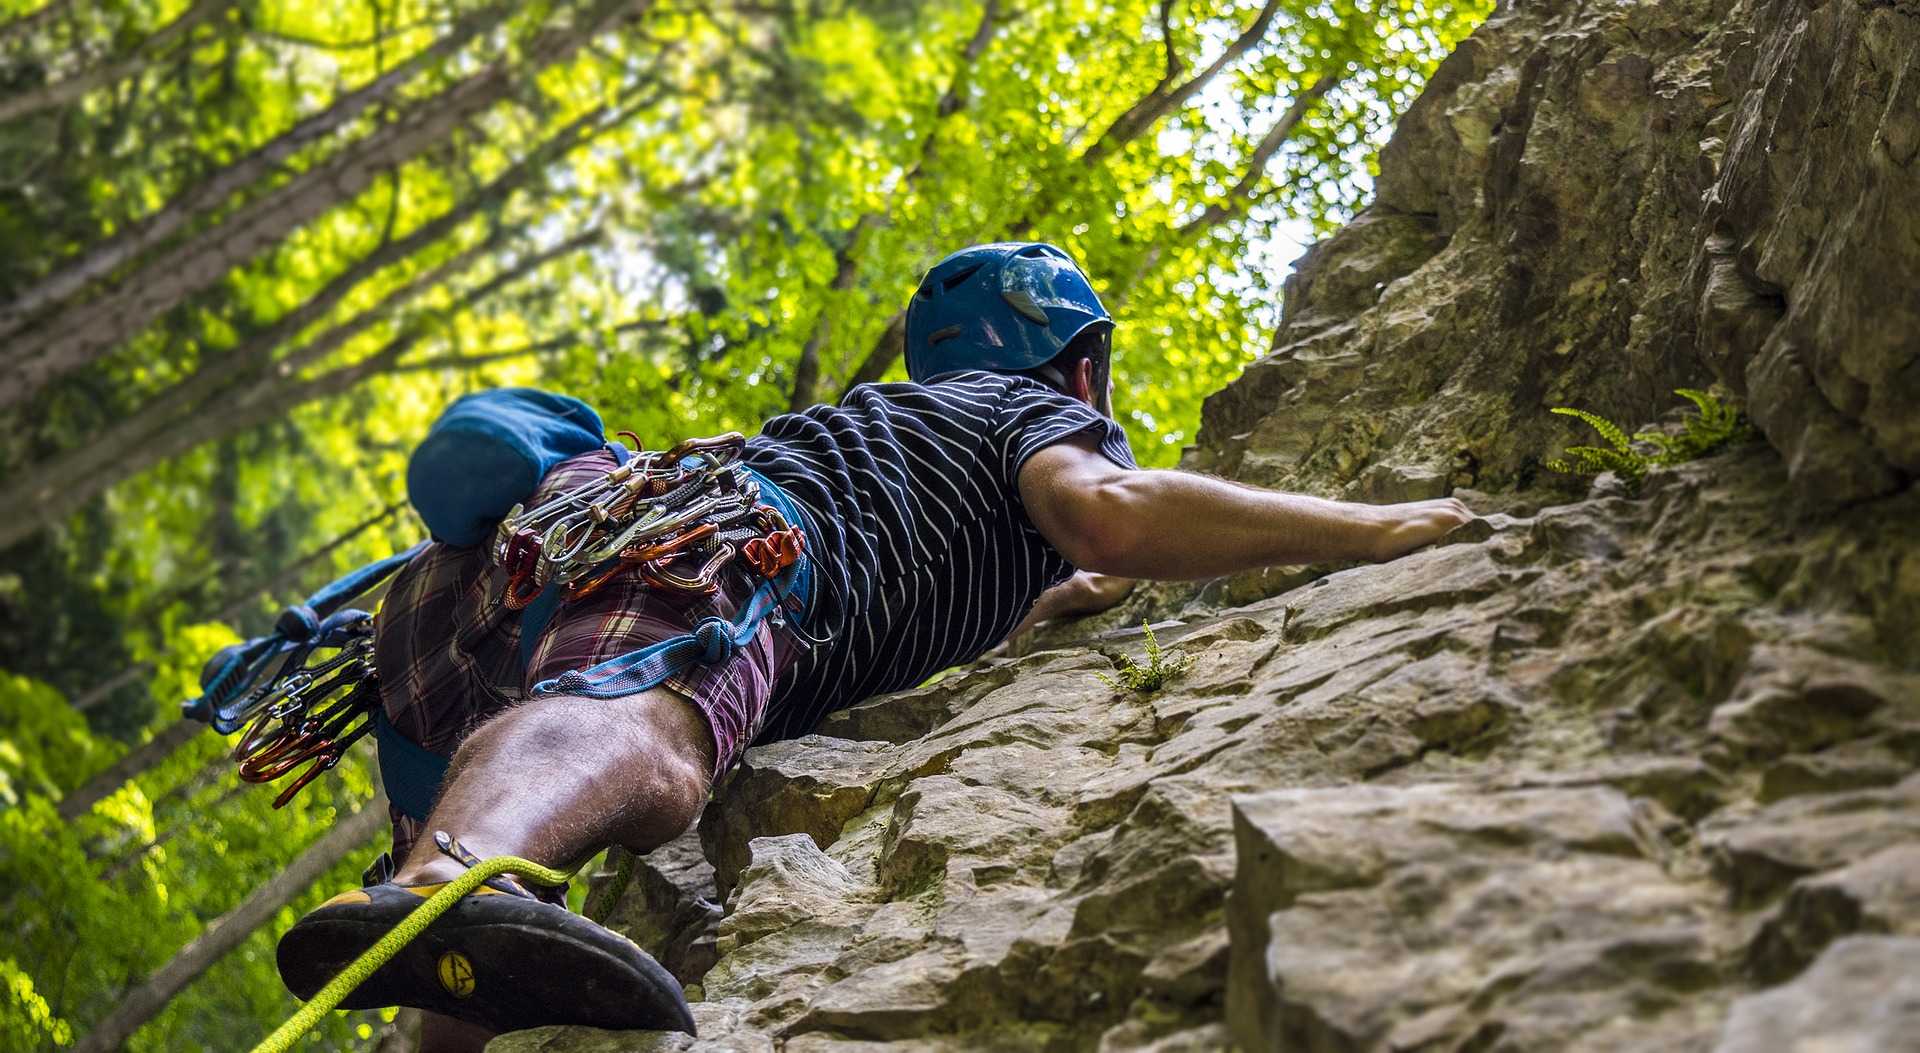 climber climbing rock face